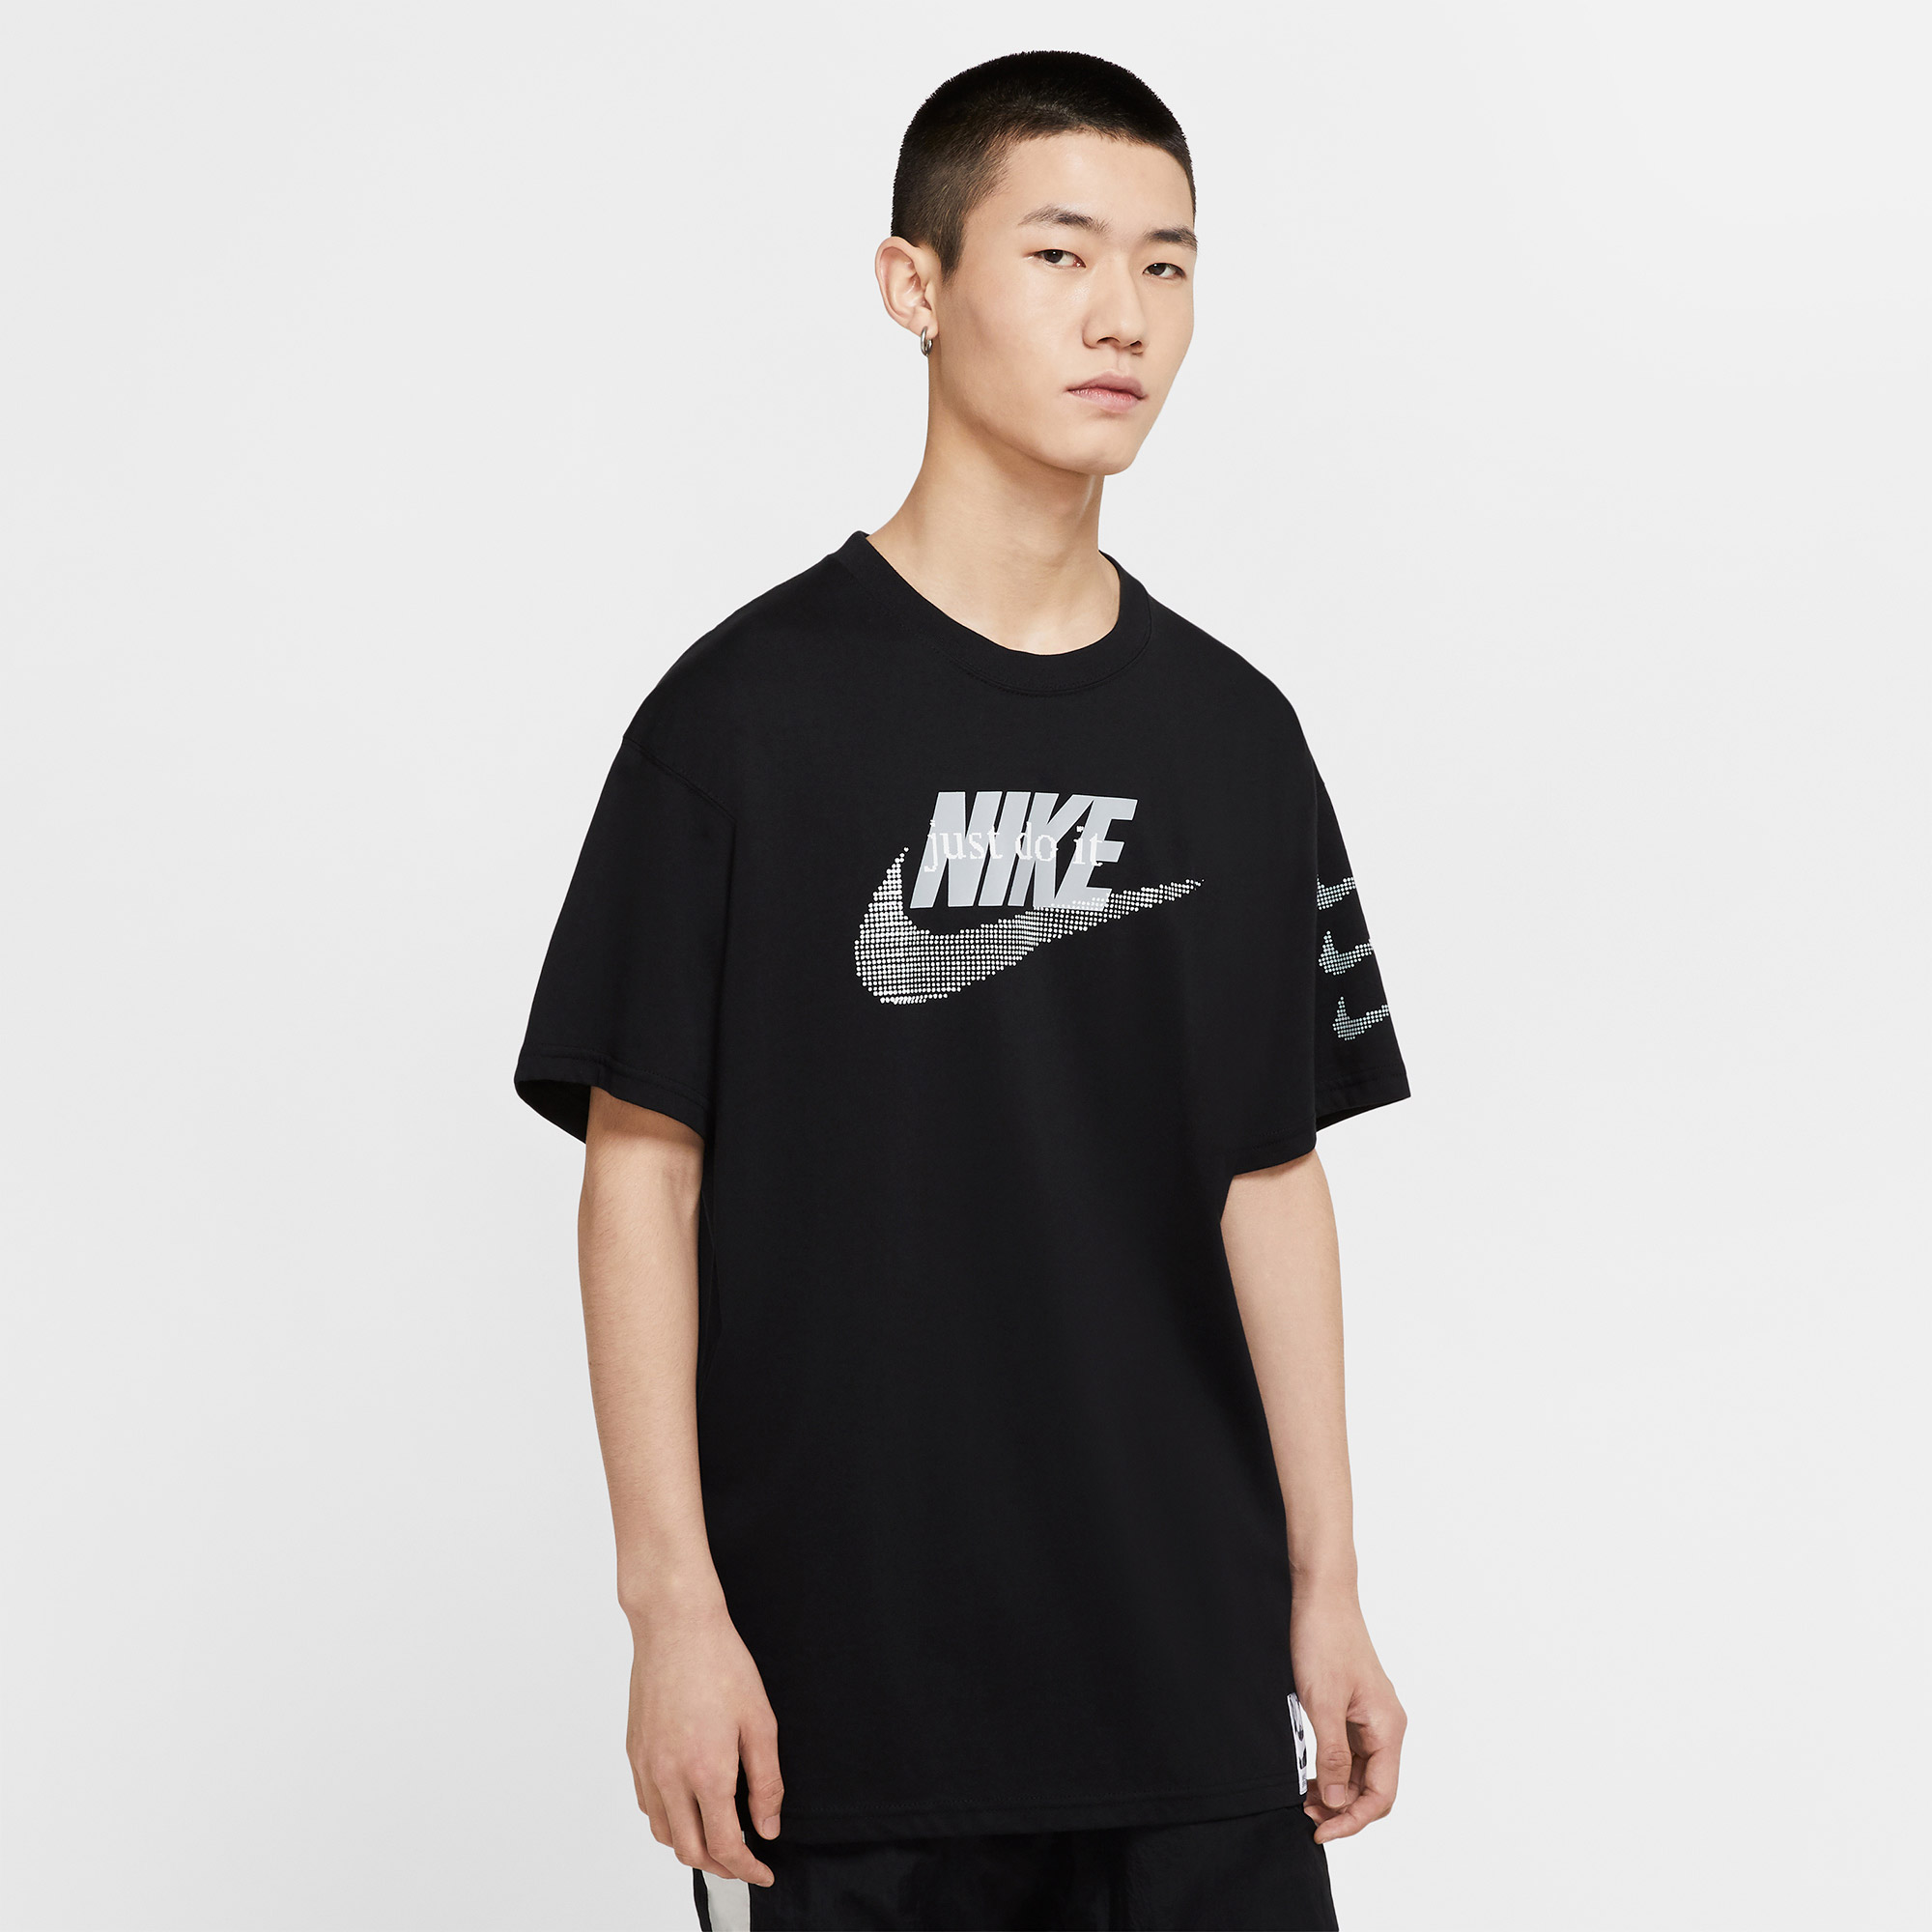 Áo Thun Nike Dri-Fit Legend0376-010 + + + 100% Chính Hãng